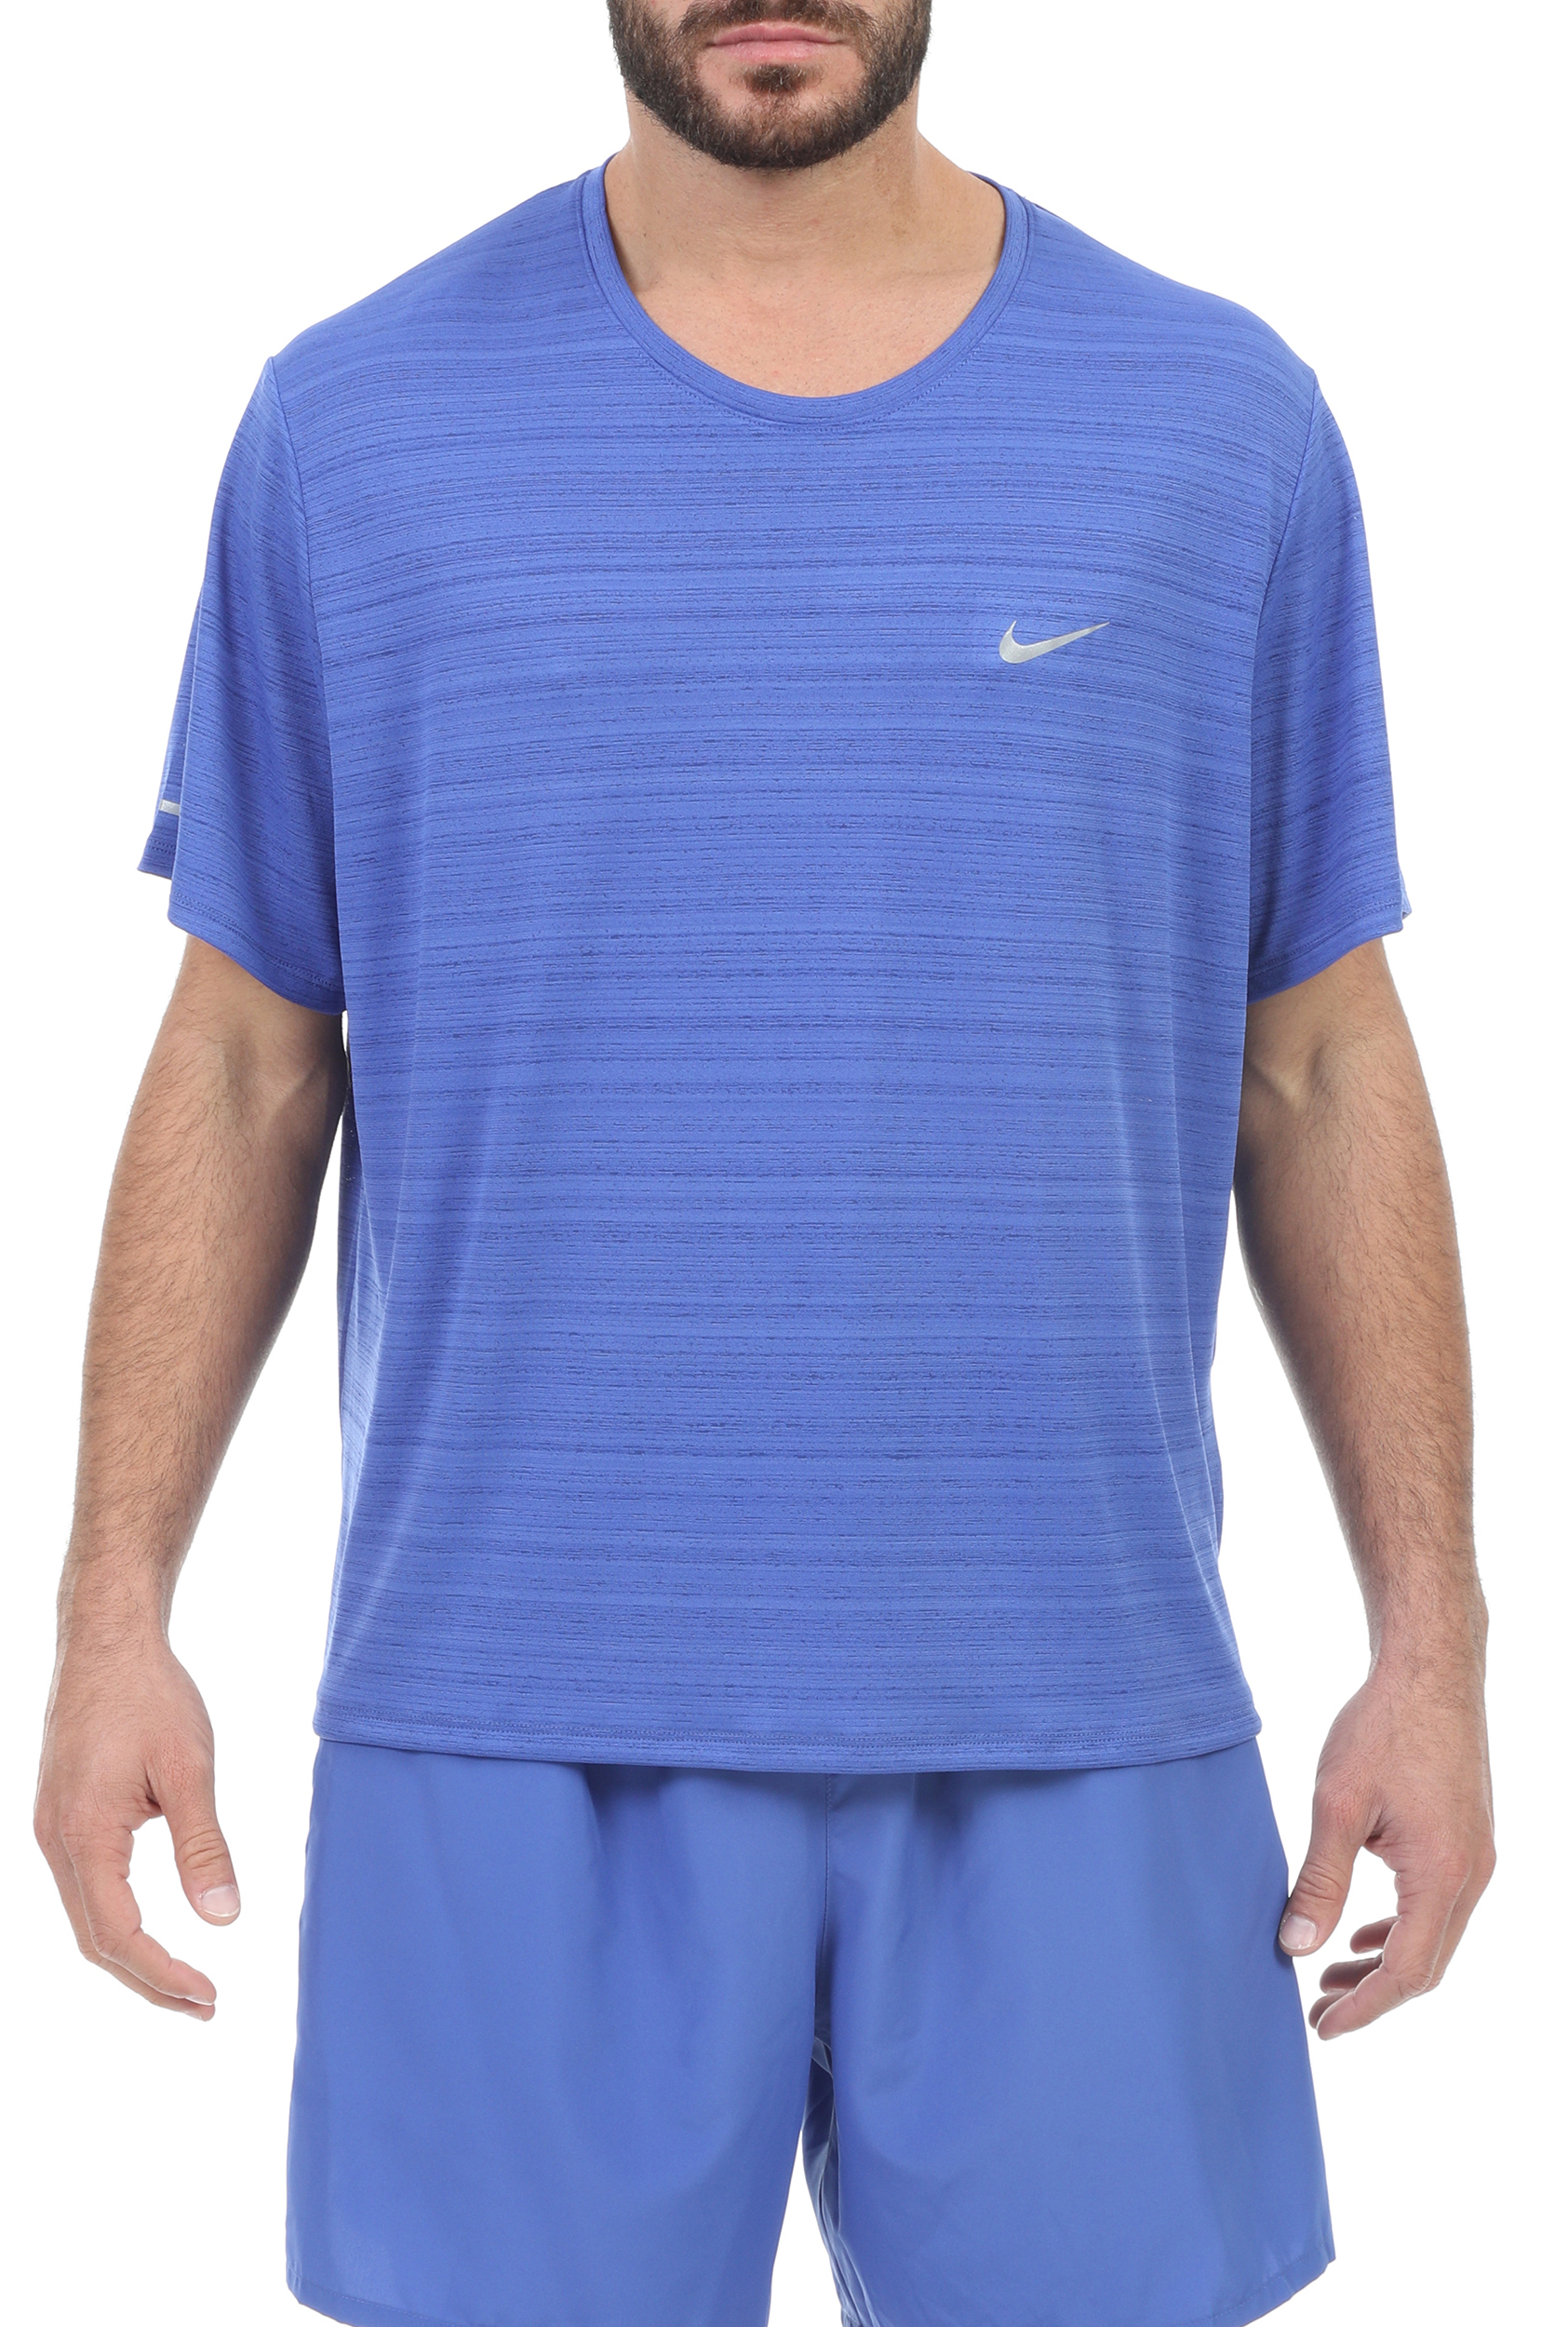 Ανδρικά/Ρούχα/Αθλητικά/T-shirt NIKE - Ανδρική μπλούζα NIKE DF MILER TOP SS μπλε